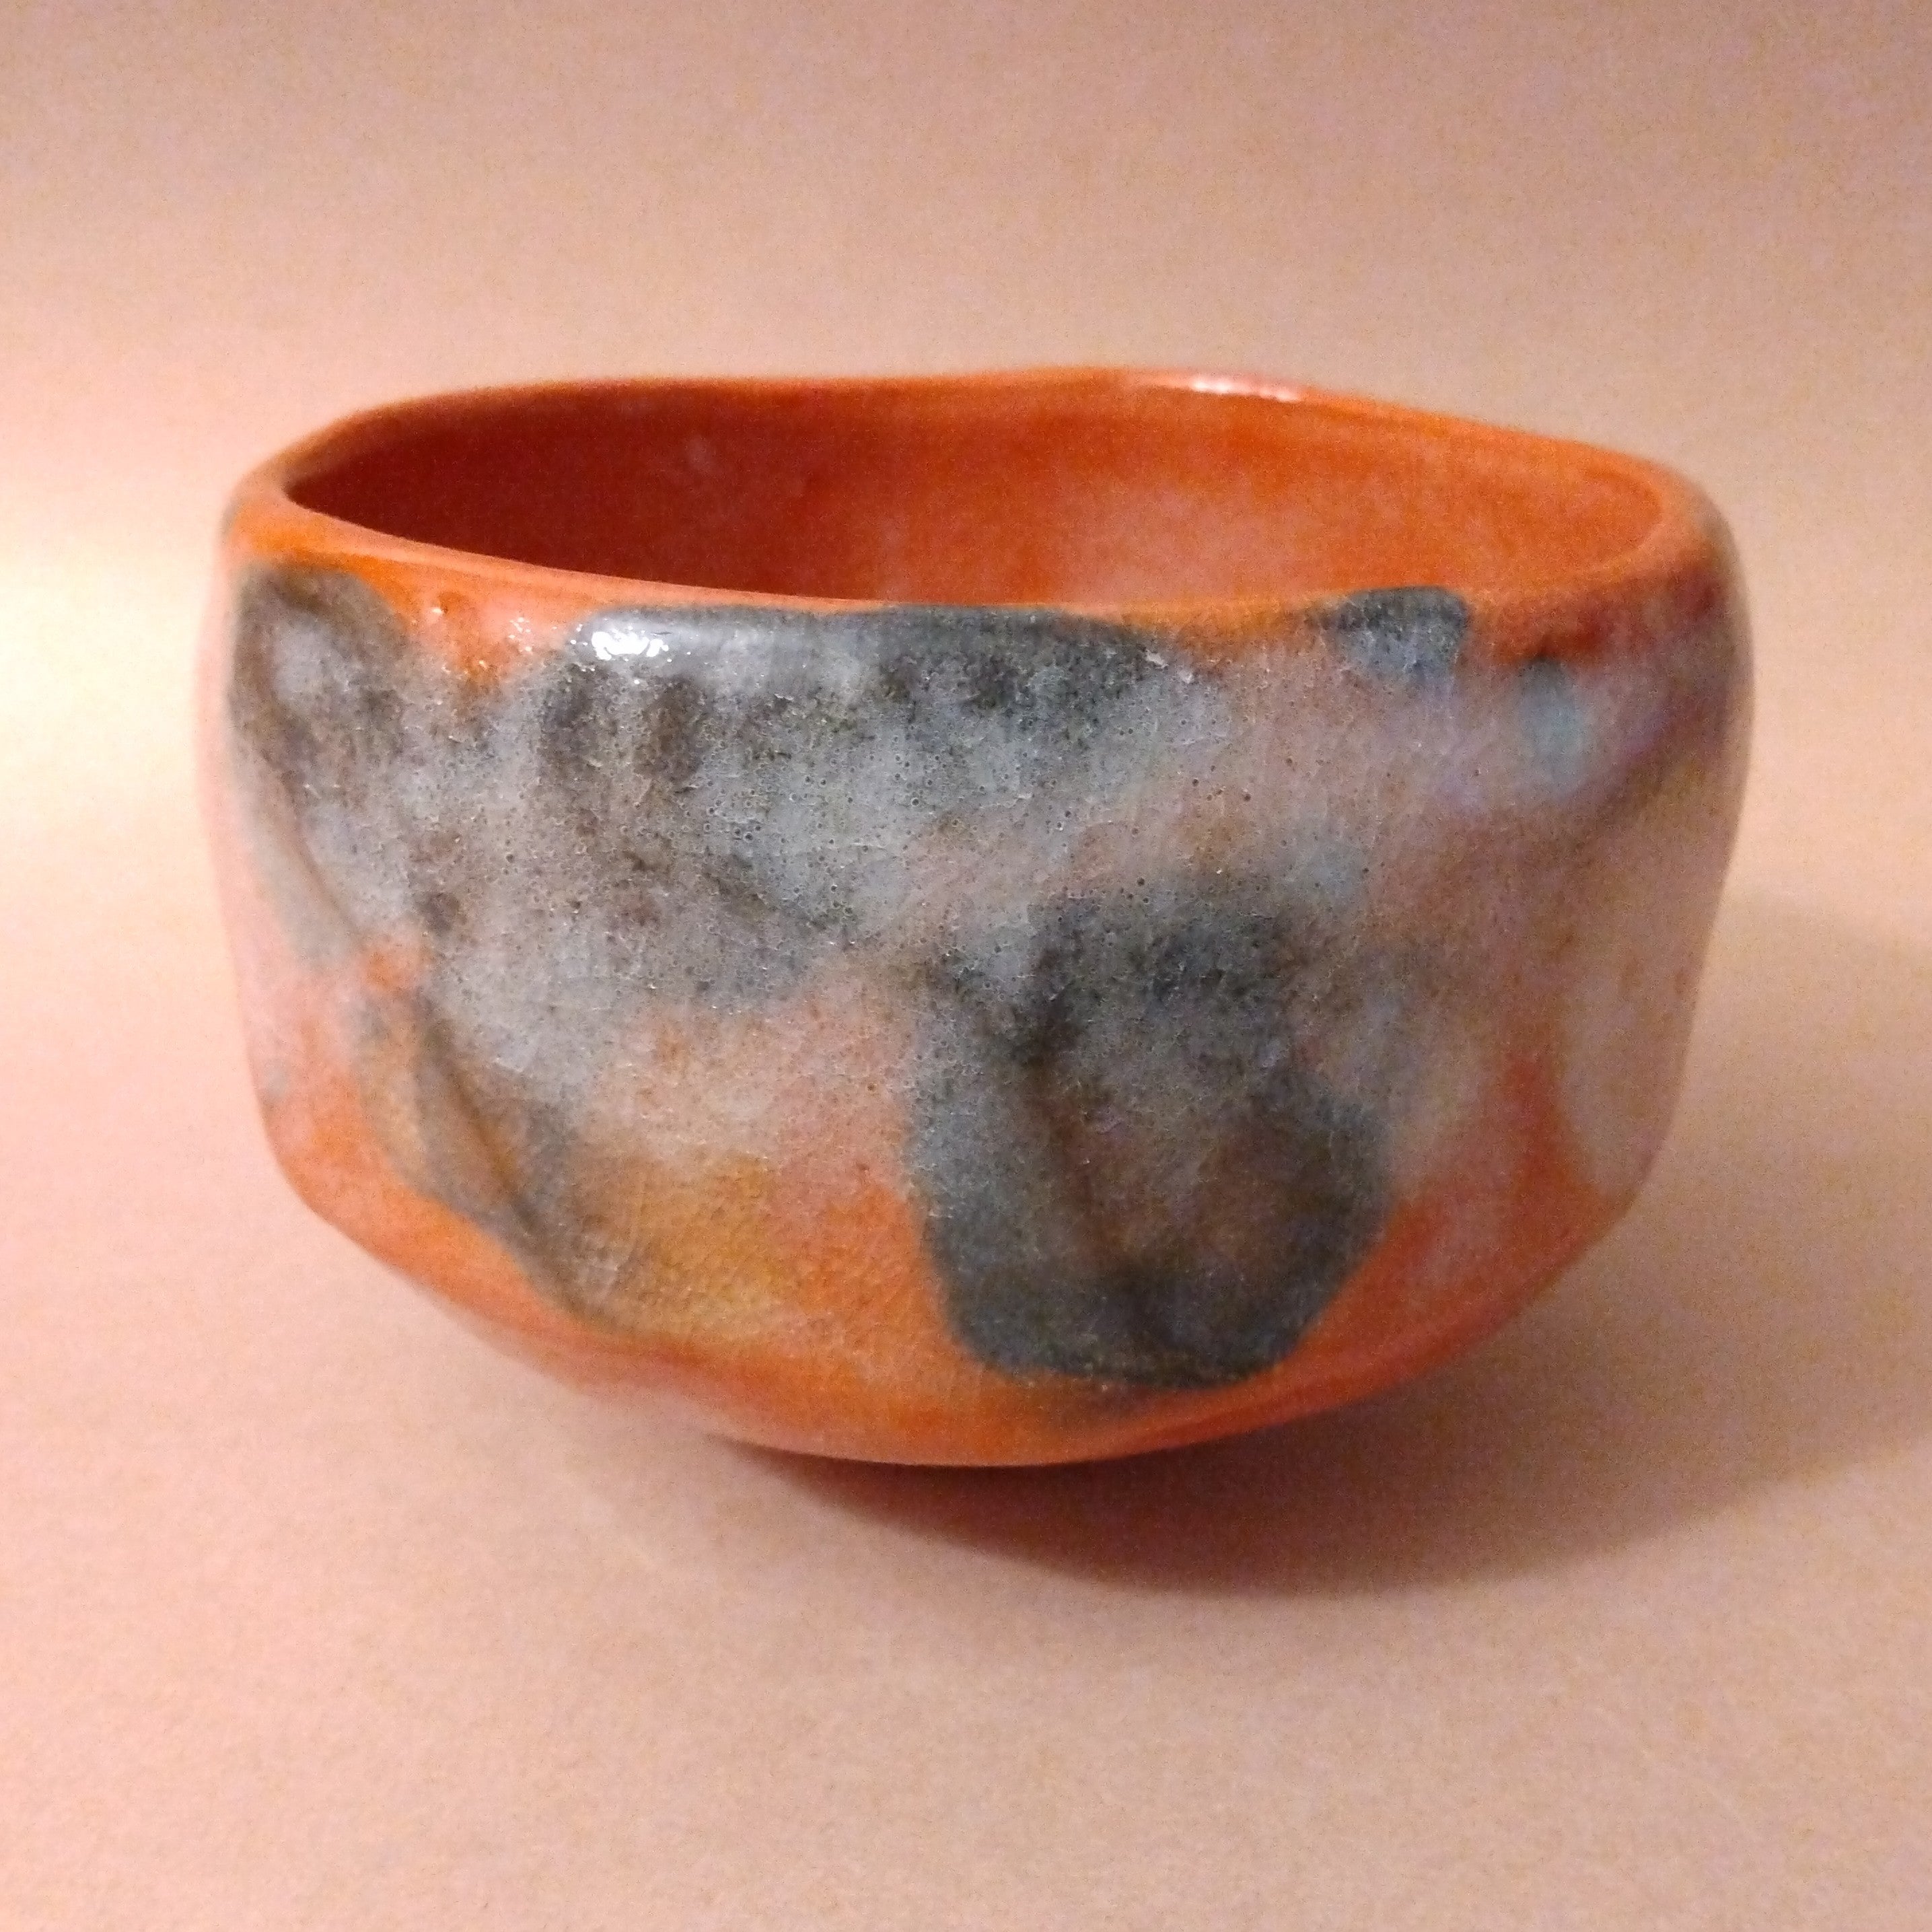 Akaraku (Red raku) Matcha Chawan (Tea Bowl) by Sasaki Shoraku; Thiel Collection